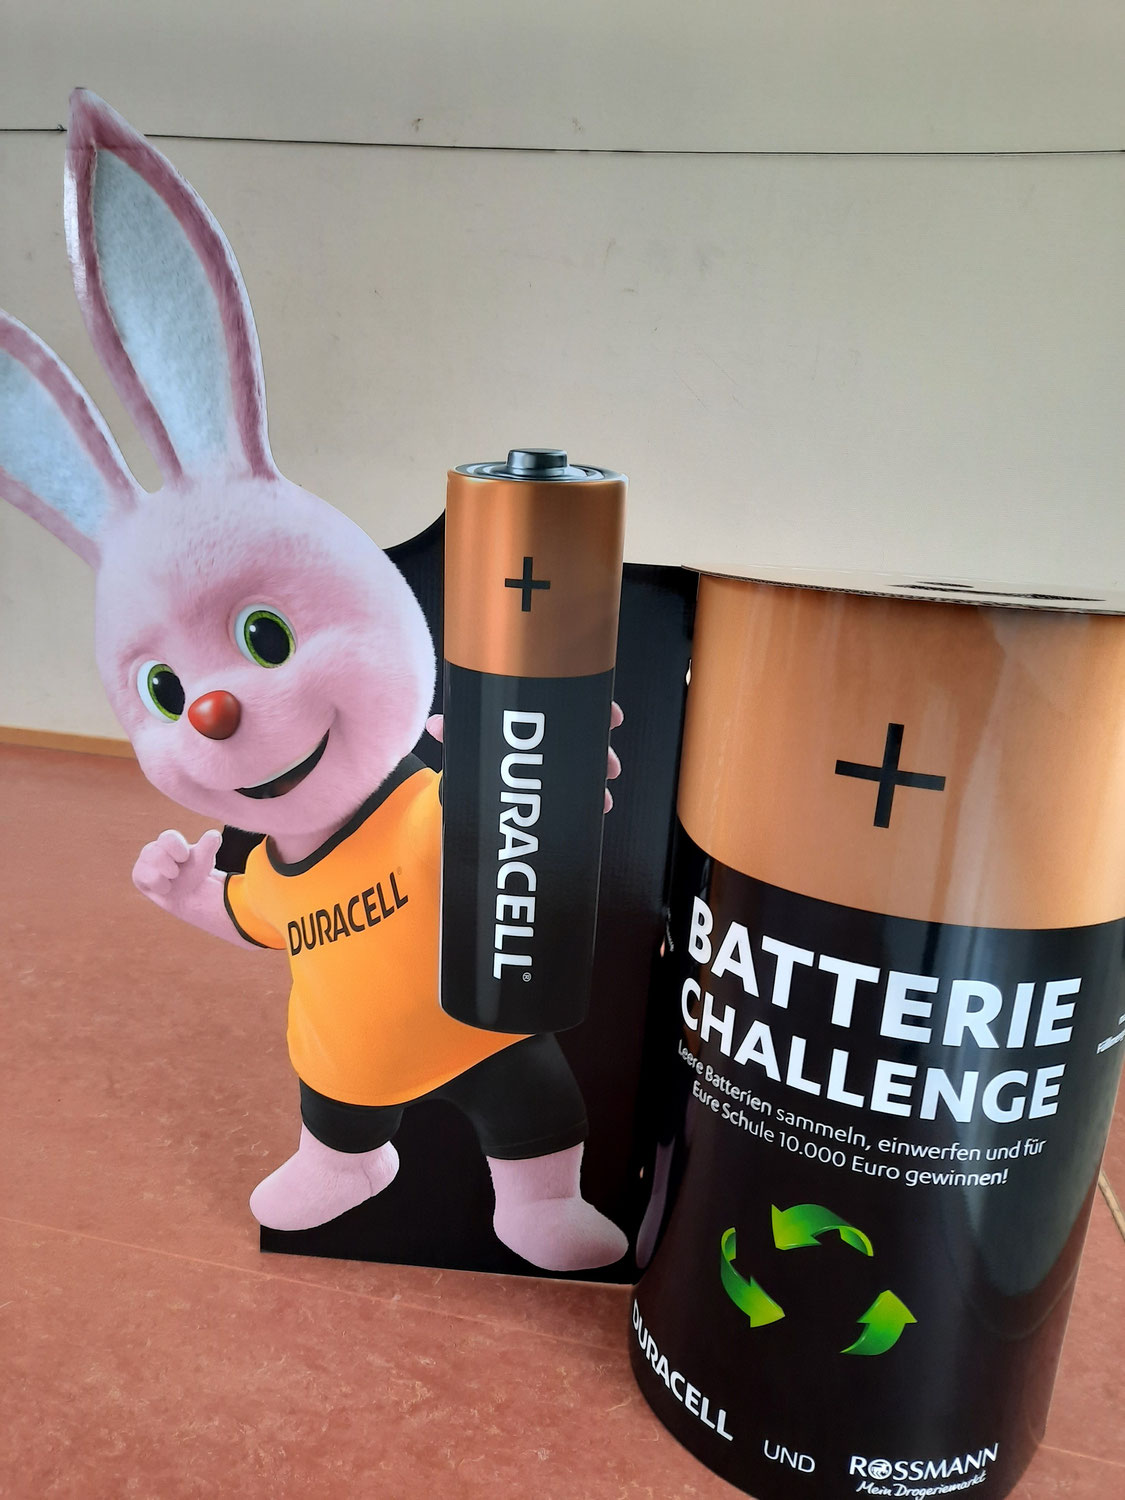 Batterie-Challenge